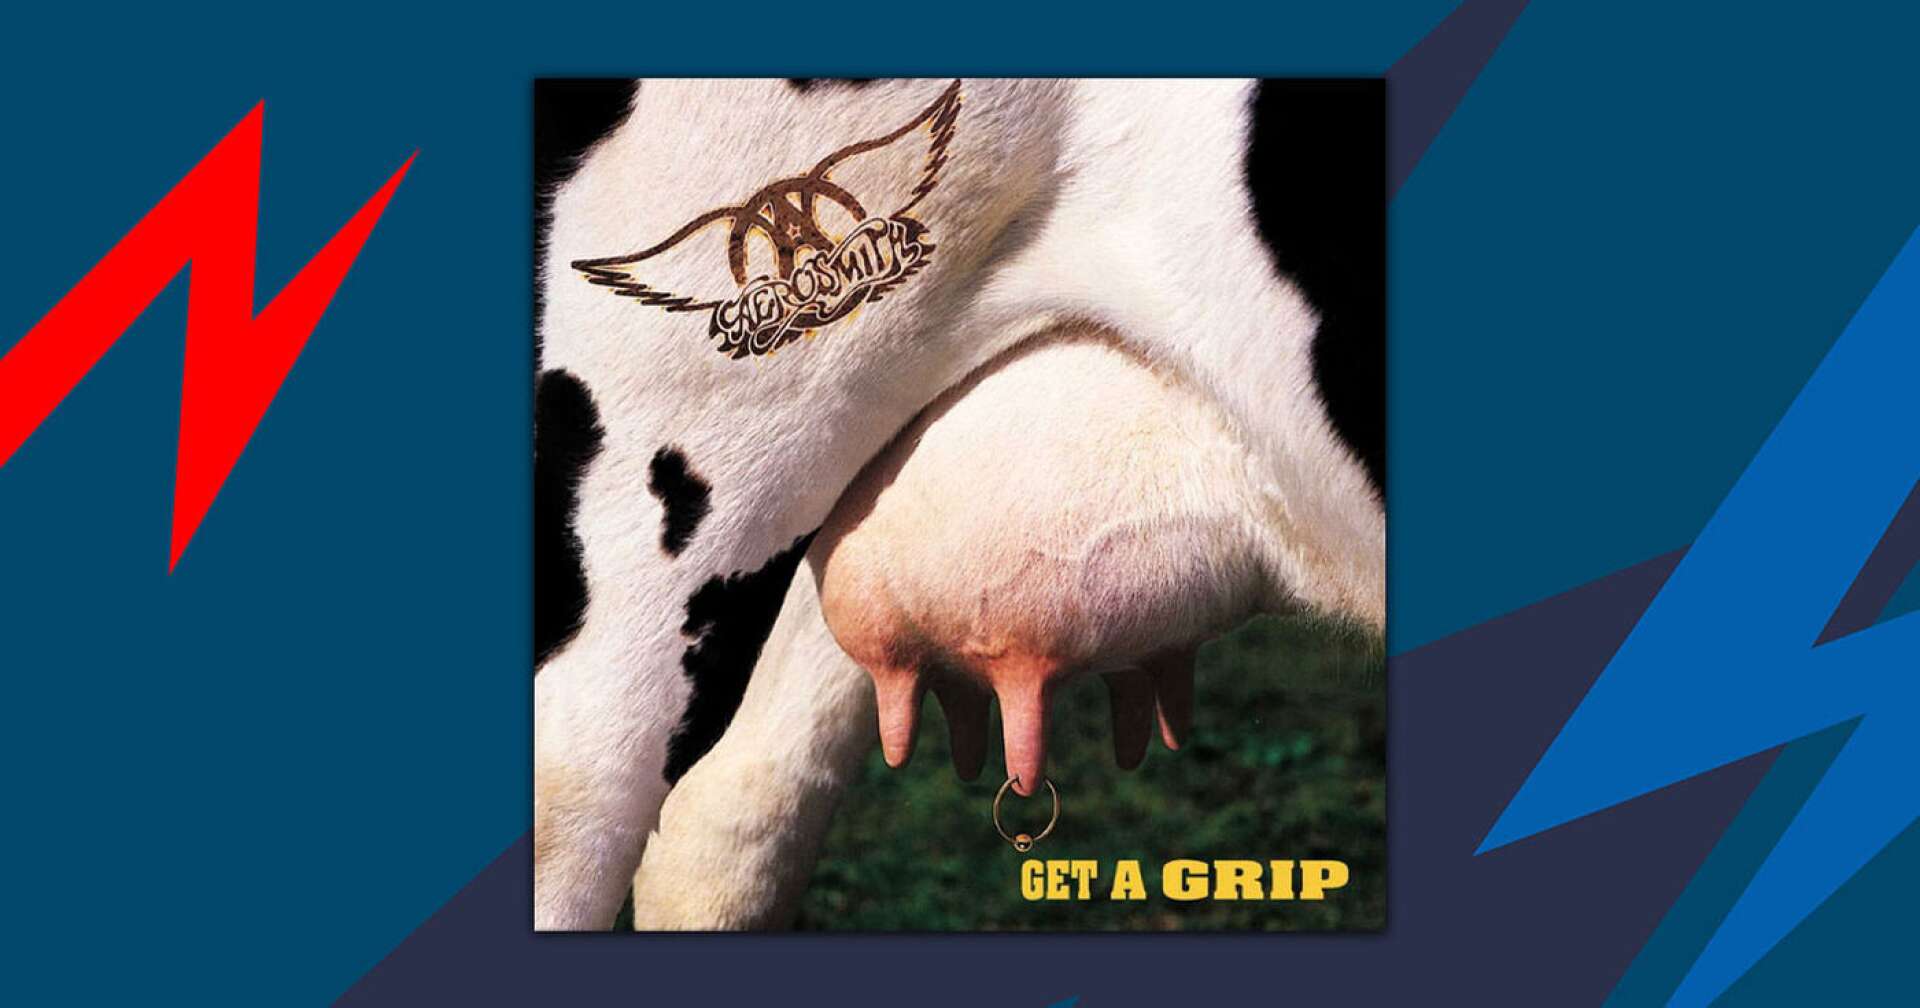 Aerosmith-Albumcover, das den Euter einer Kuh zeigt